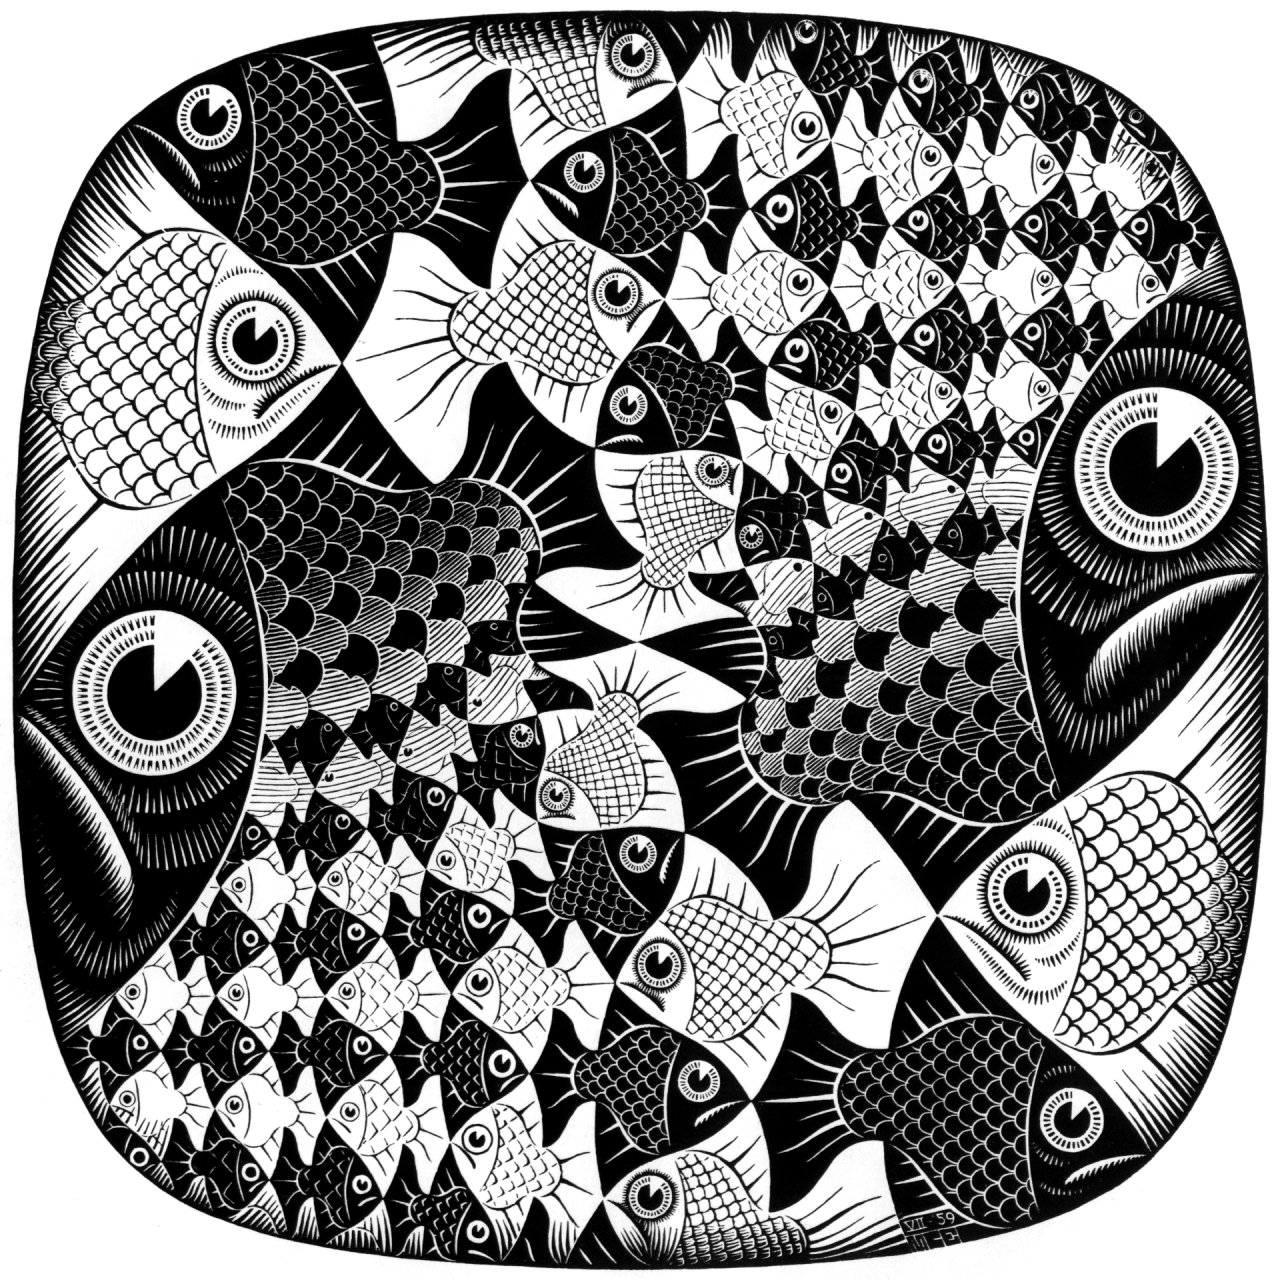 Escher2 (502K)